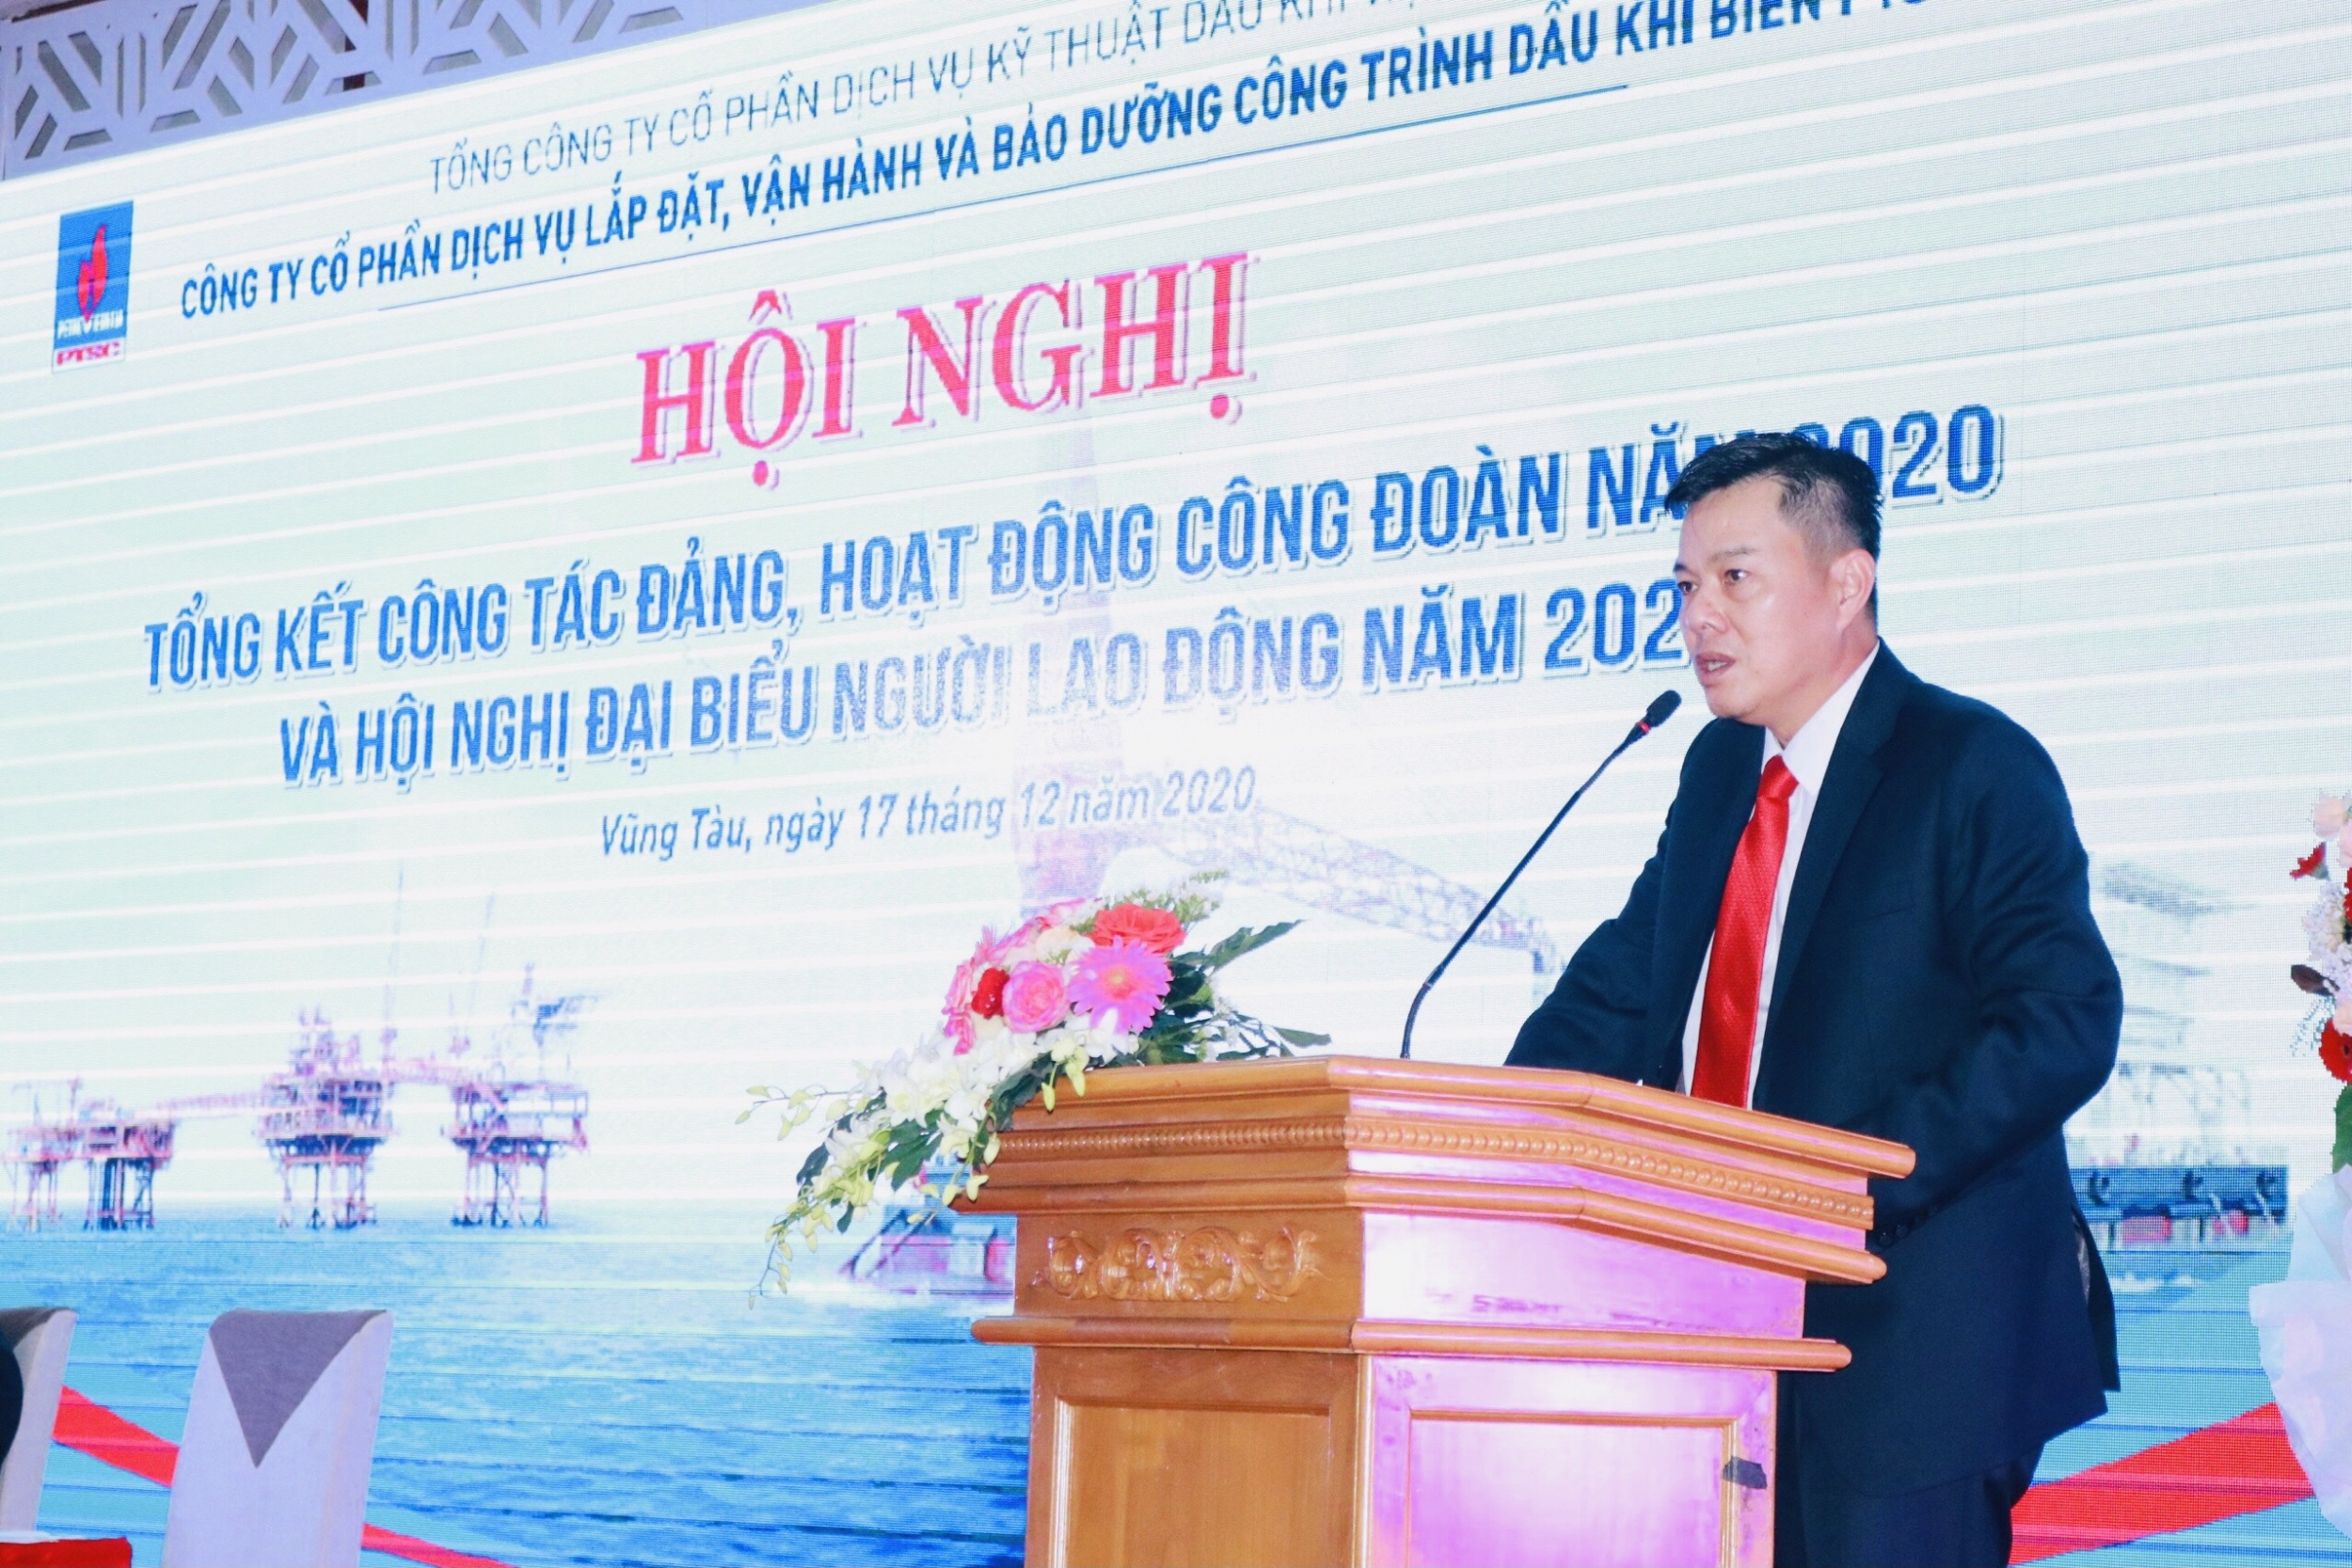 Ông Dương Hùng Văn – Giám đốc Công ty POS phát biểu tại Hội nghị